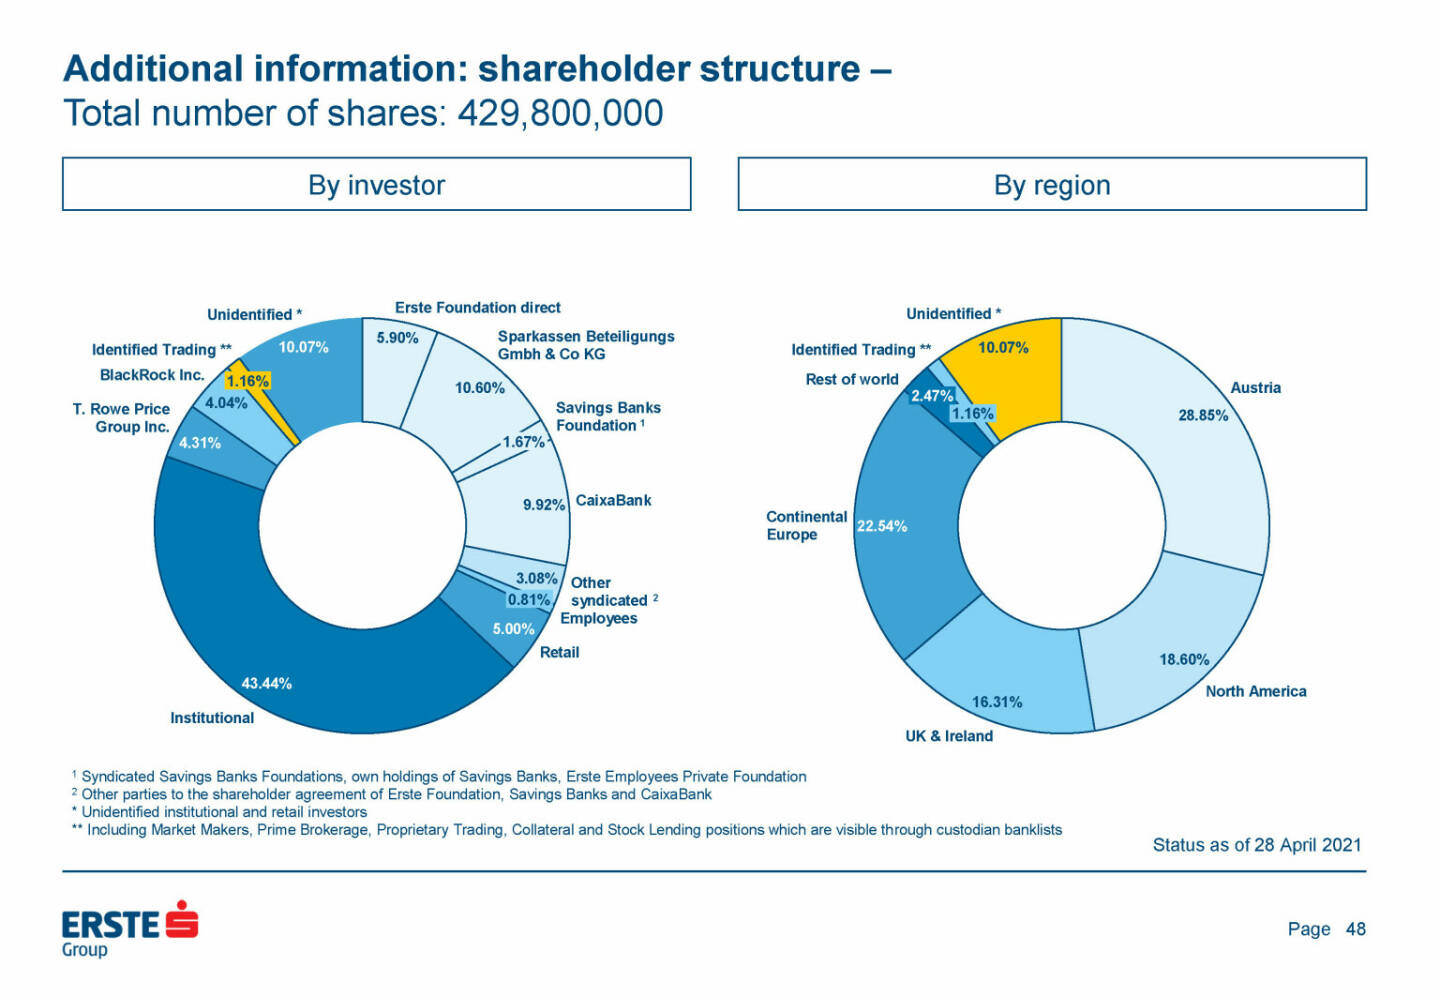 Erste Group - Additional information: shareholder structure